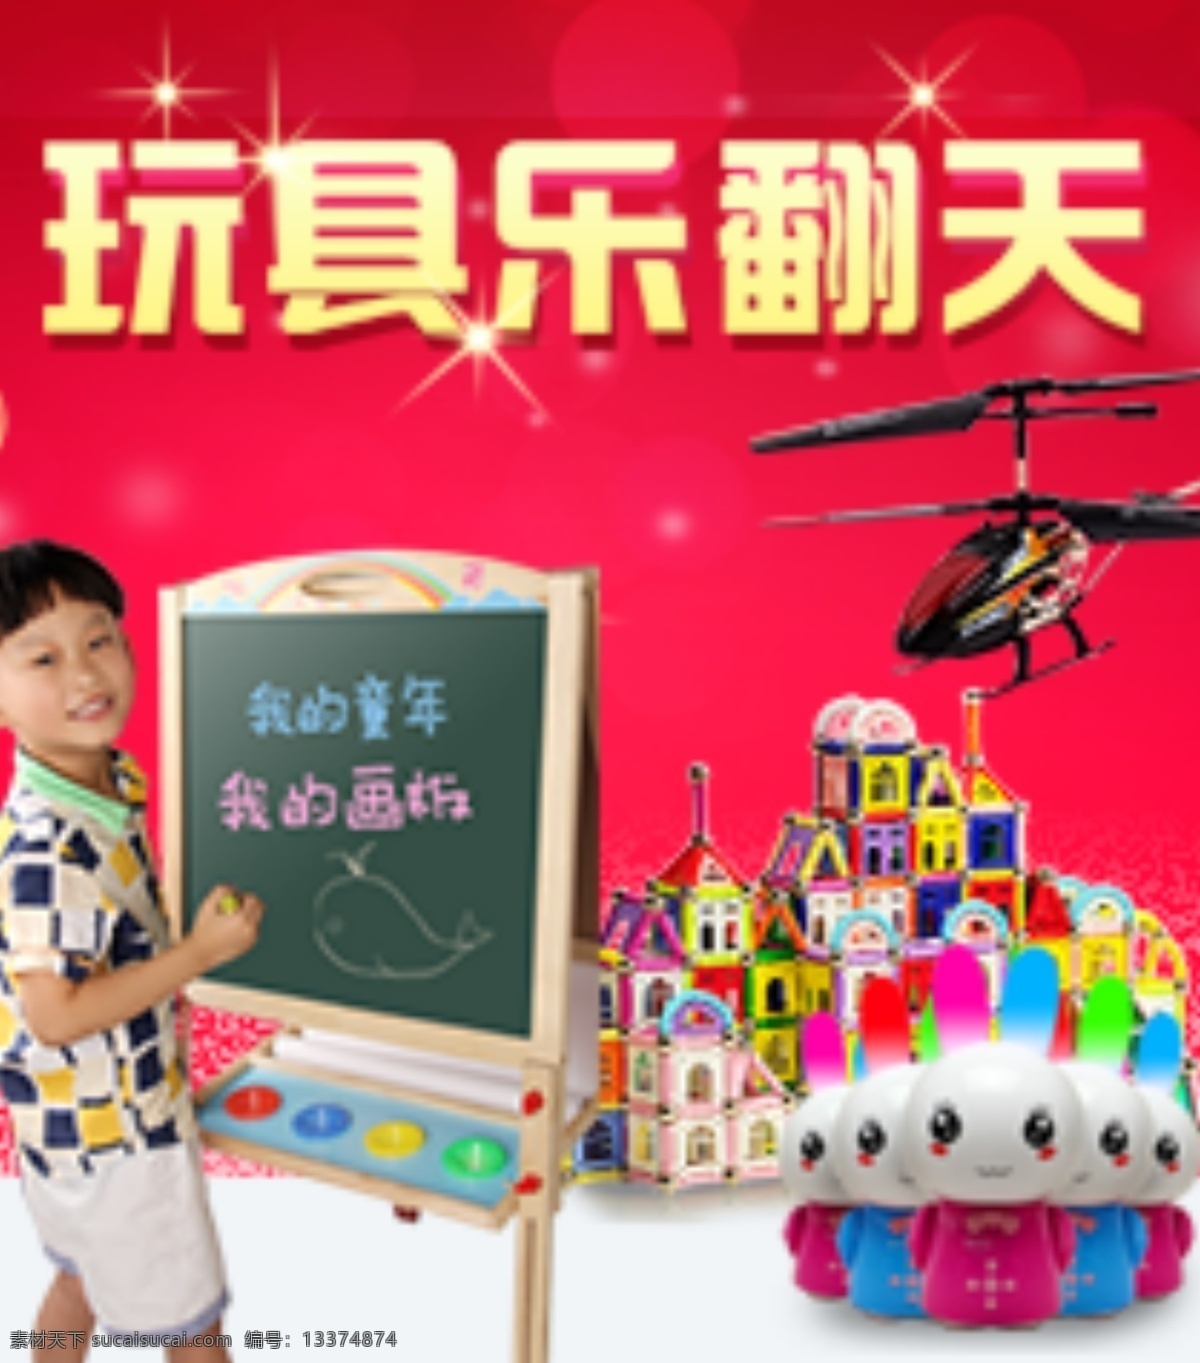 玩具 促销 积木 梦幻 圣诞节 星光 直升飞机 玩具促销 故事机 小孩 原创设计 原创淘宝设计